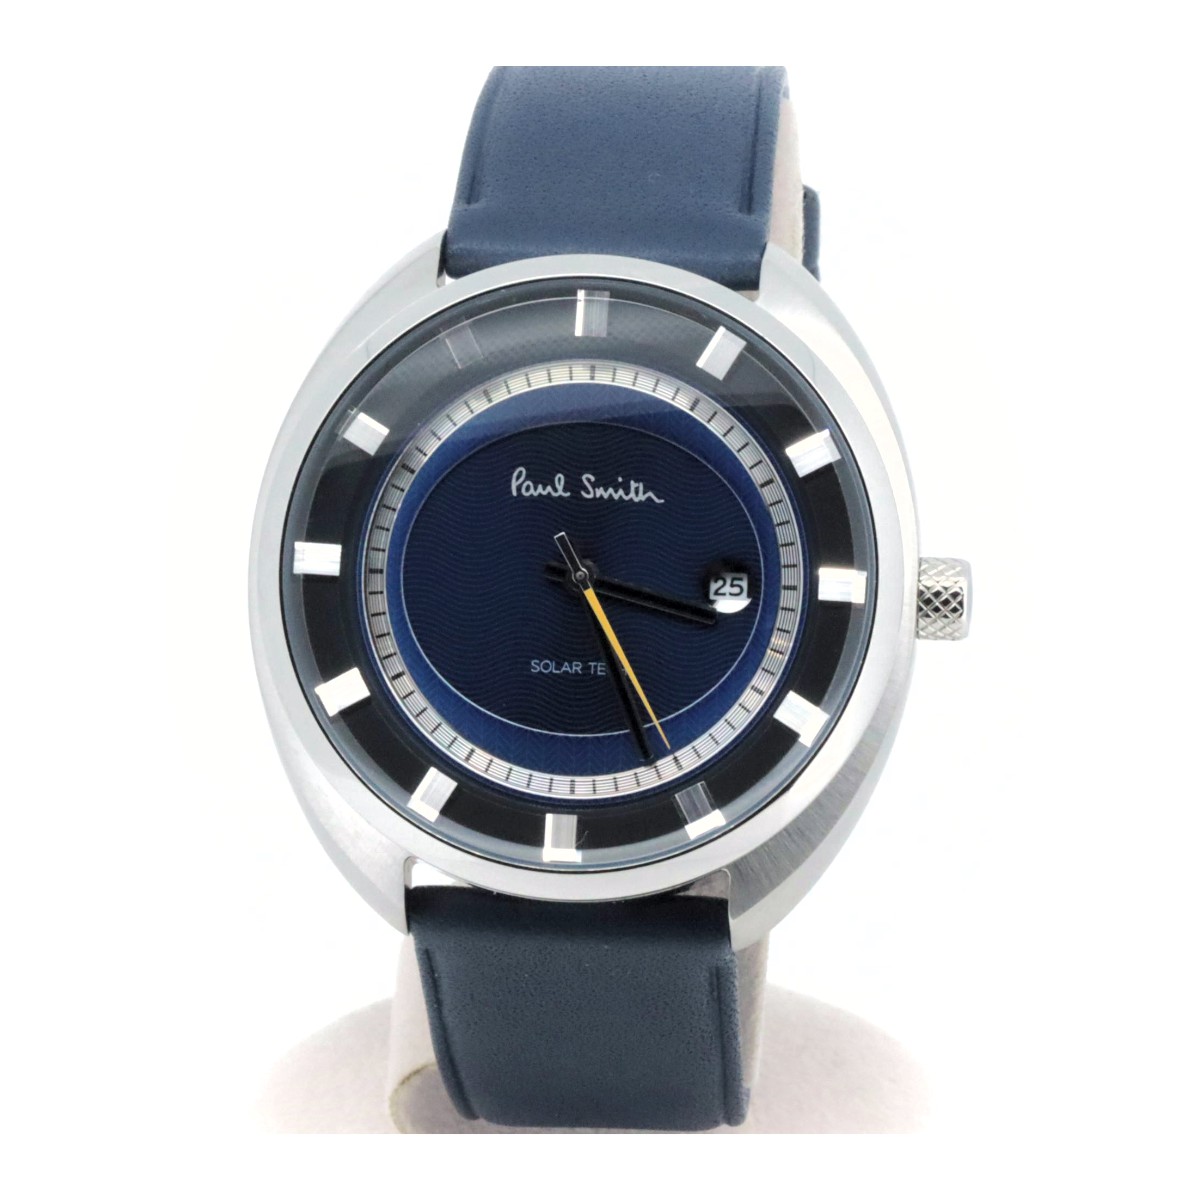 ポールスミス ソーラーテック ステアリング J810-T021972 メンズ腕時計 青 質屋出品